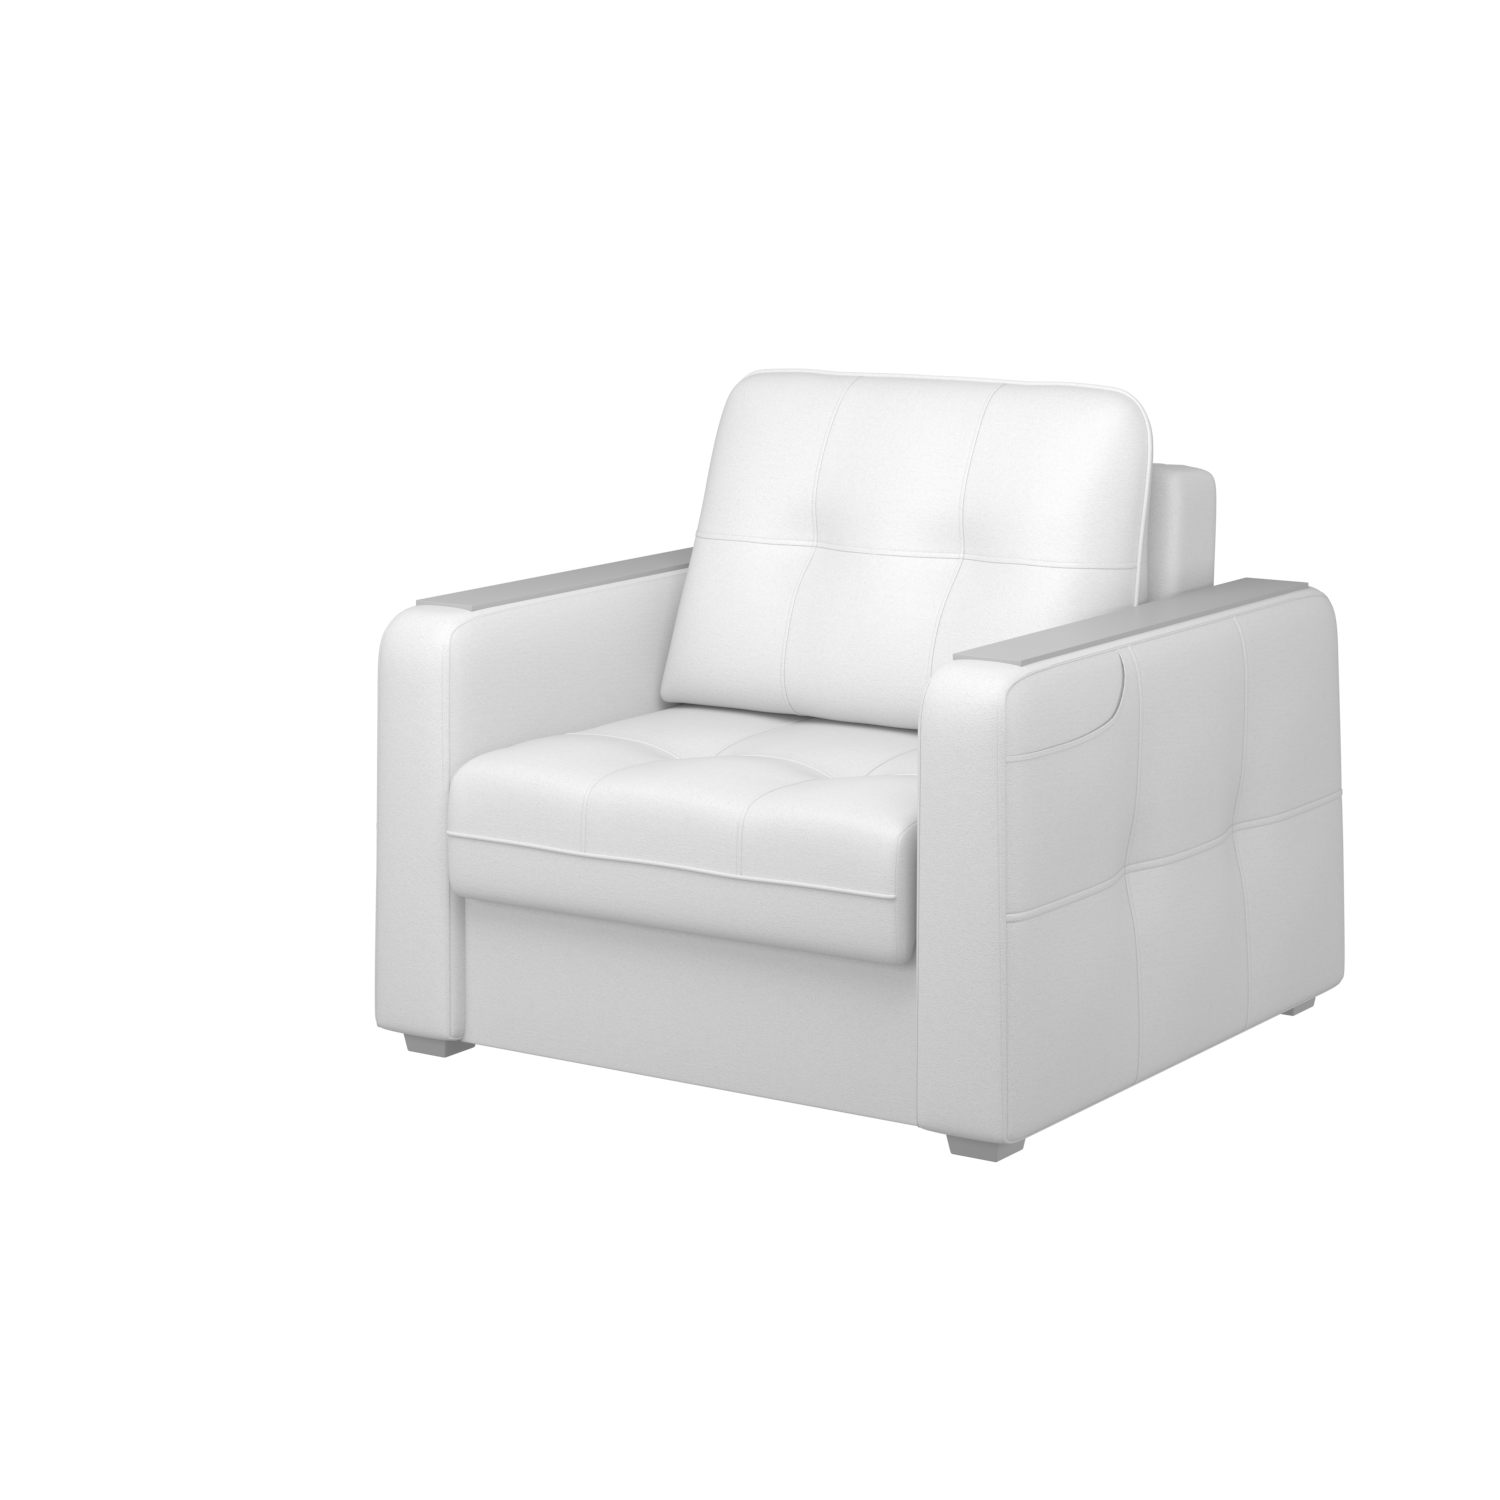 Мягкое кресло с ящиком Киль-3, кКЛ01.мк900.900у